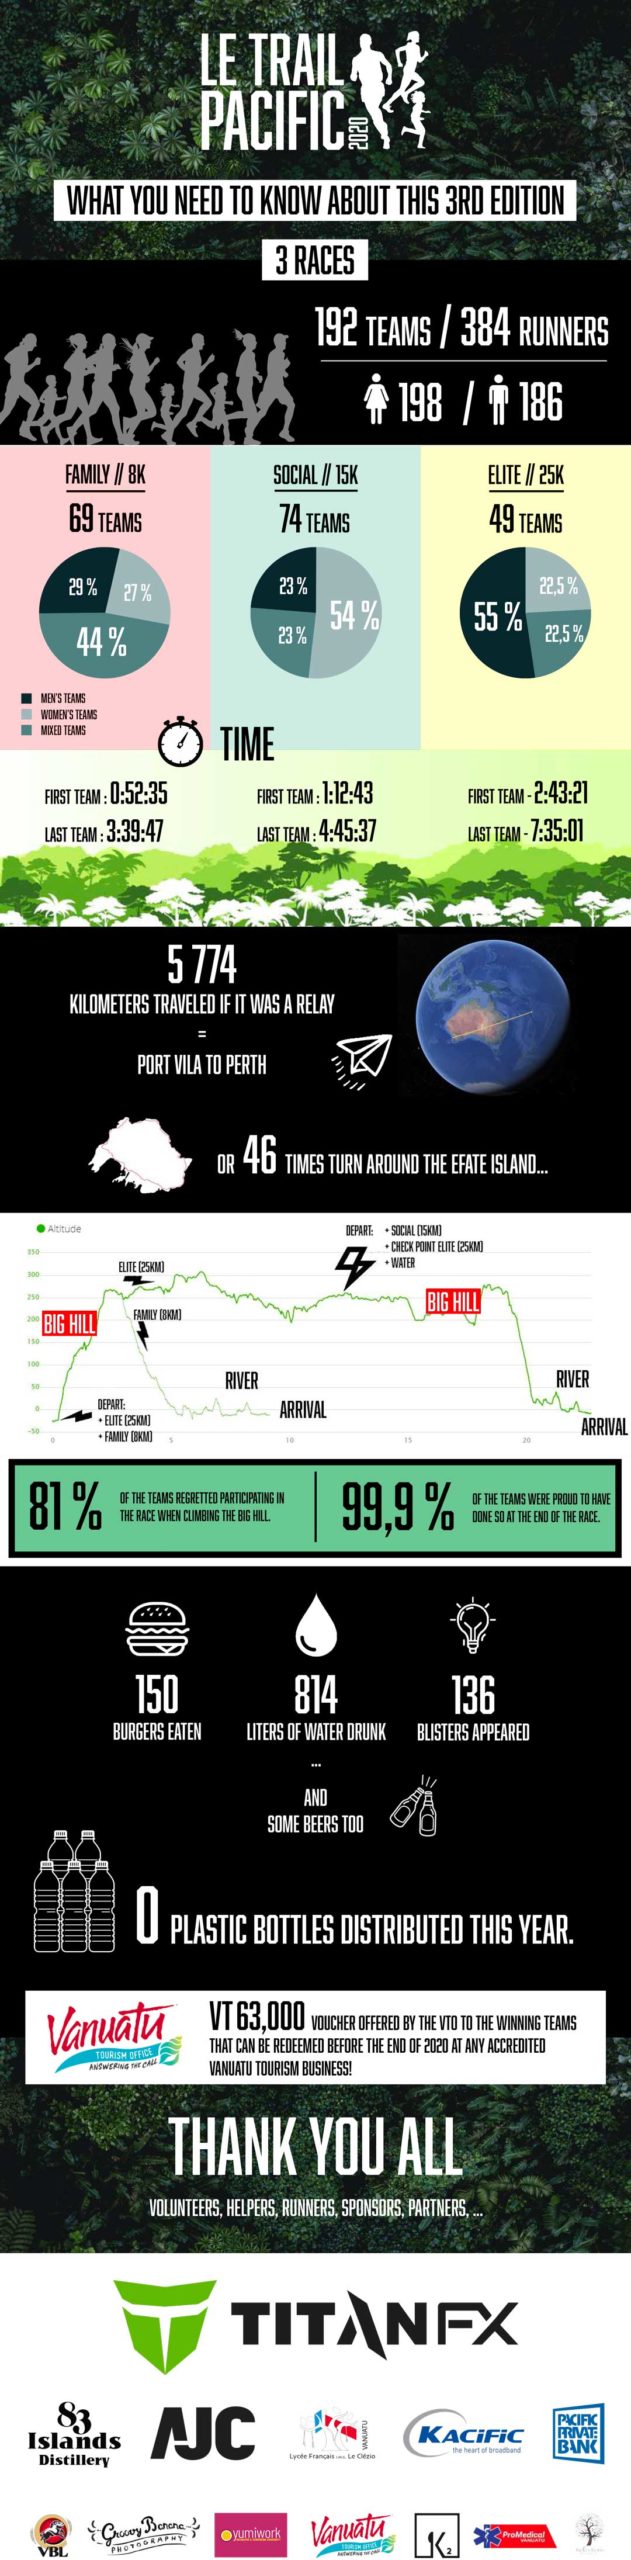 Le Trail Pacific 2020 Infographic - AJC Vanuatu